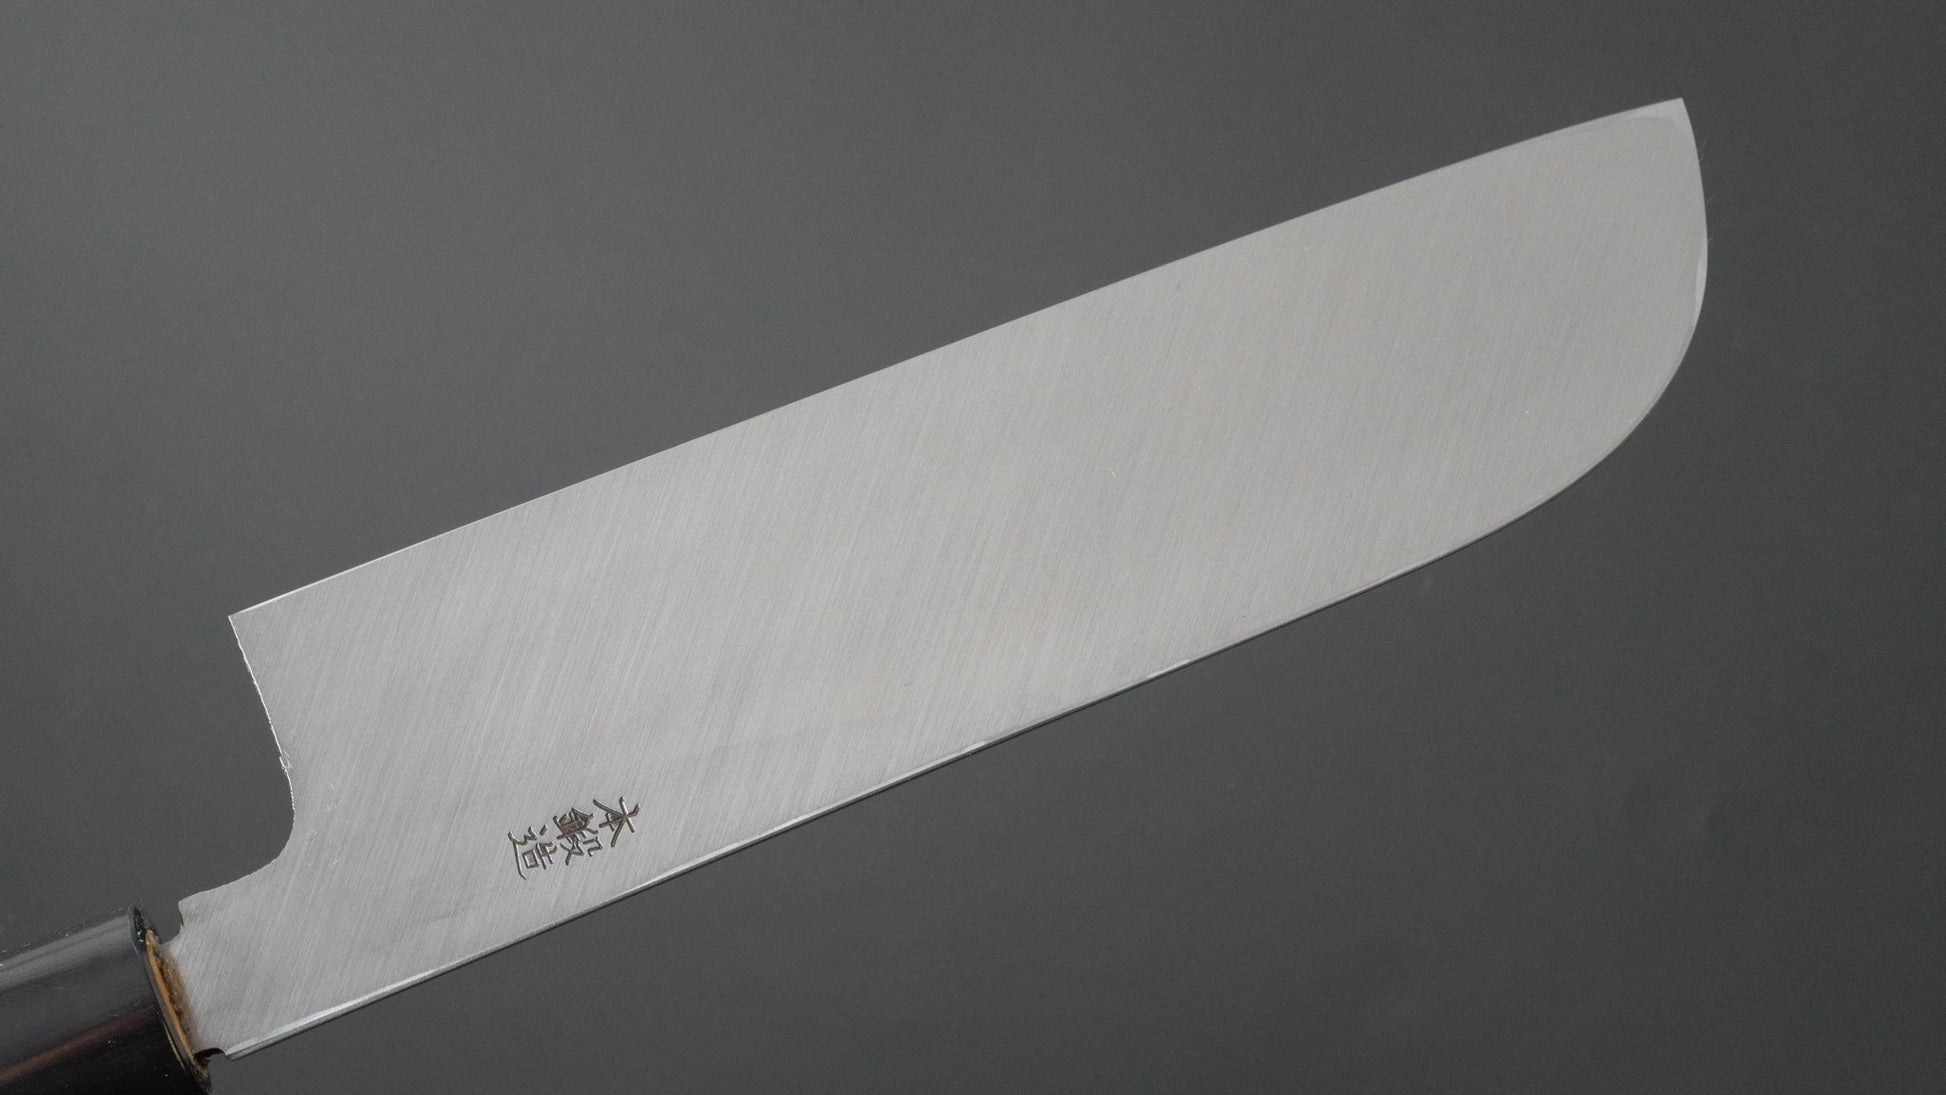 Morihei Munetsugu White #2 Kamagata Usuba 210mm Ho Wood Handle - HITOHIRA